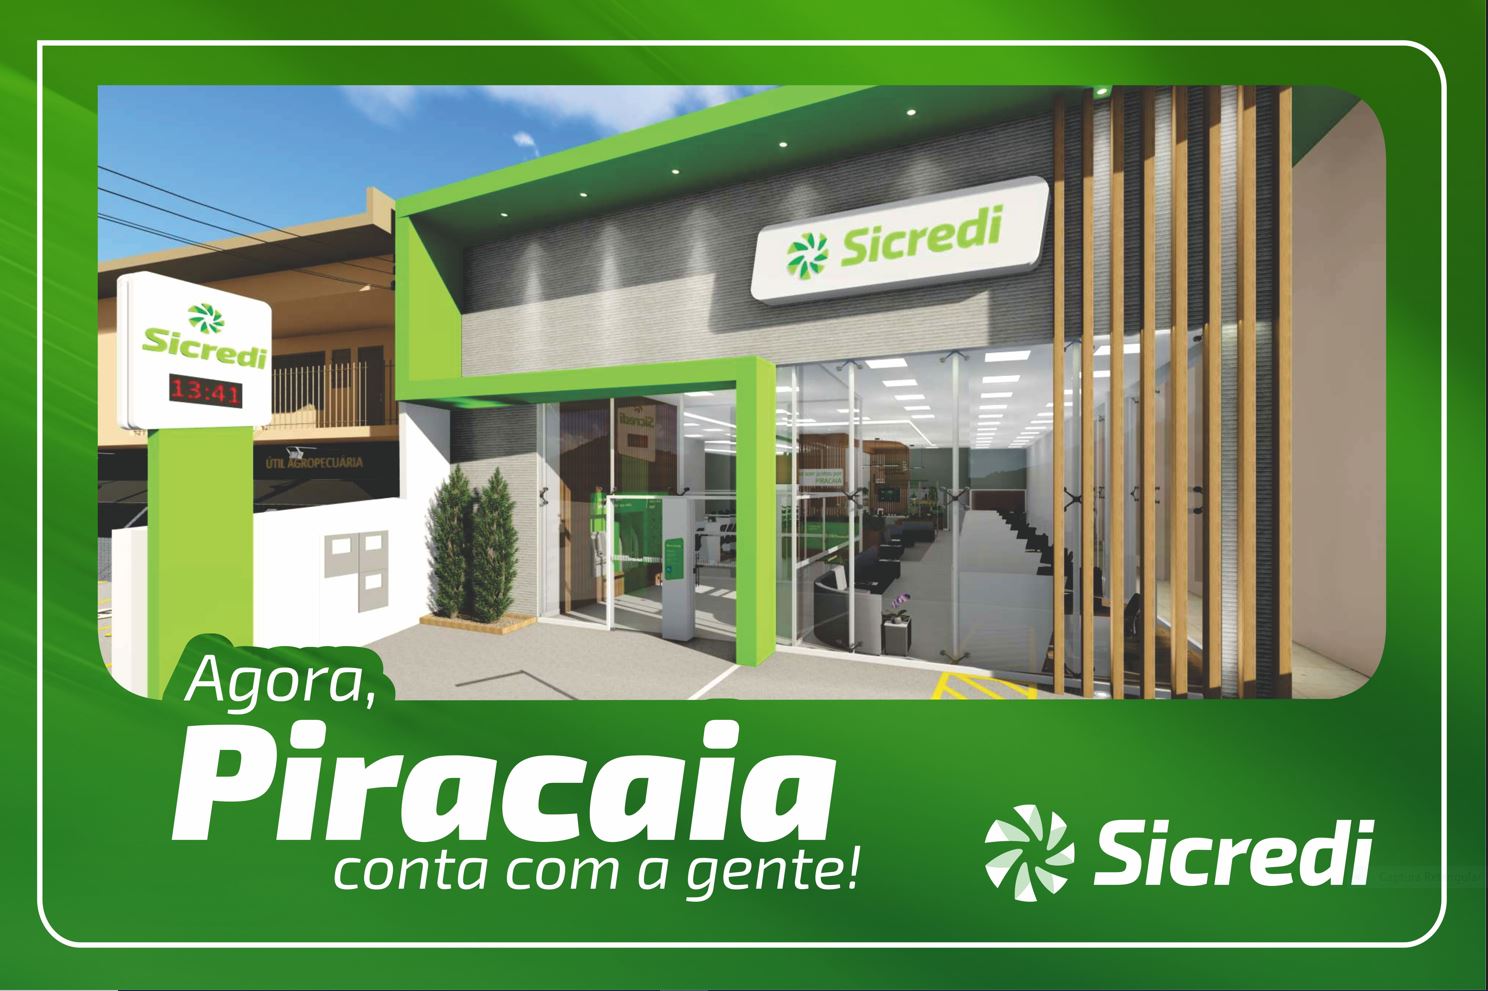 CRÉDITO: Sicredi inaugura agência em Piracaia